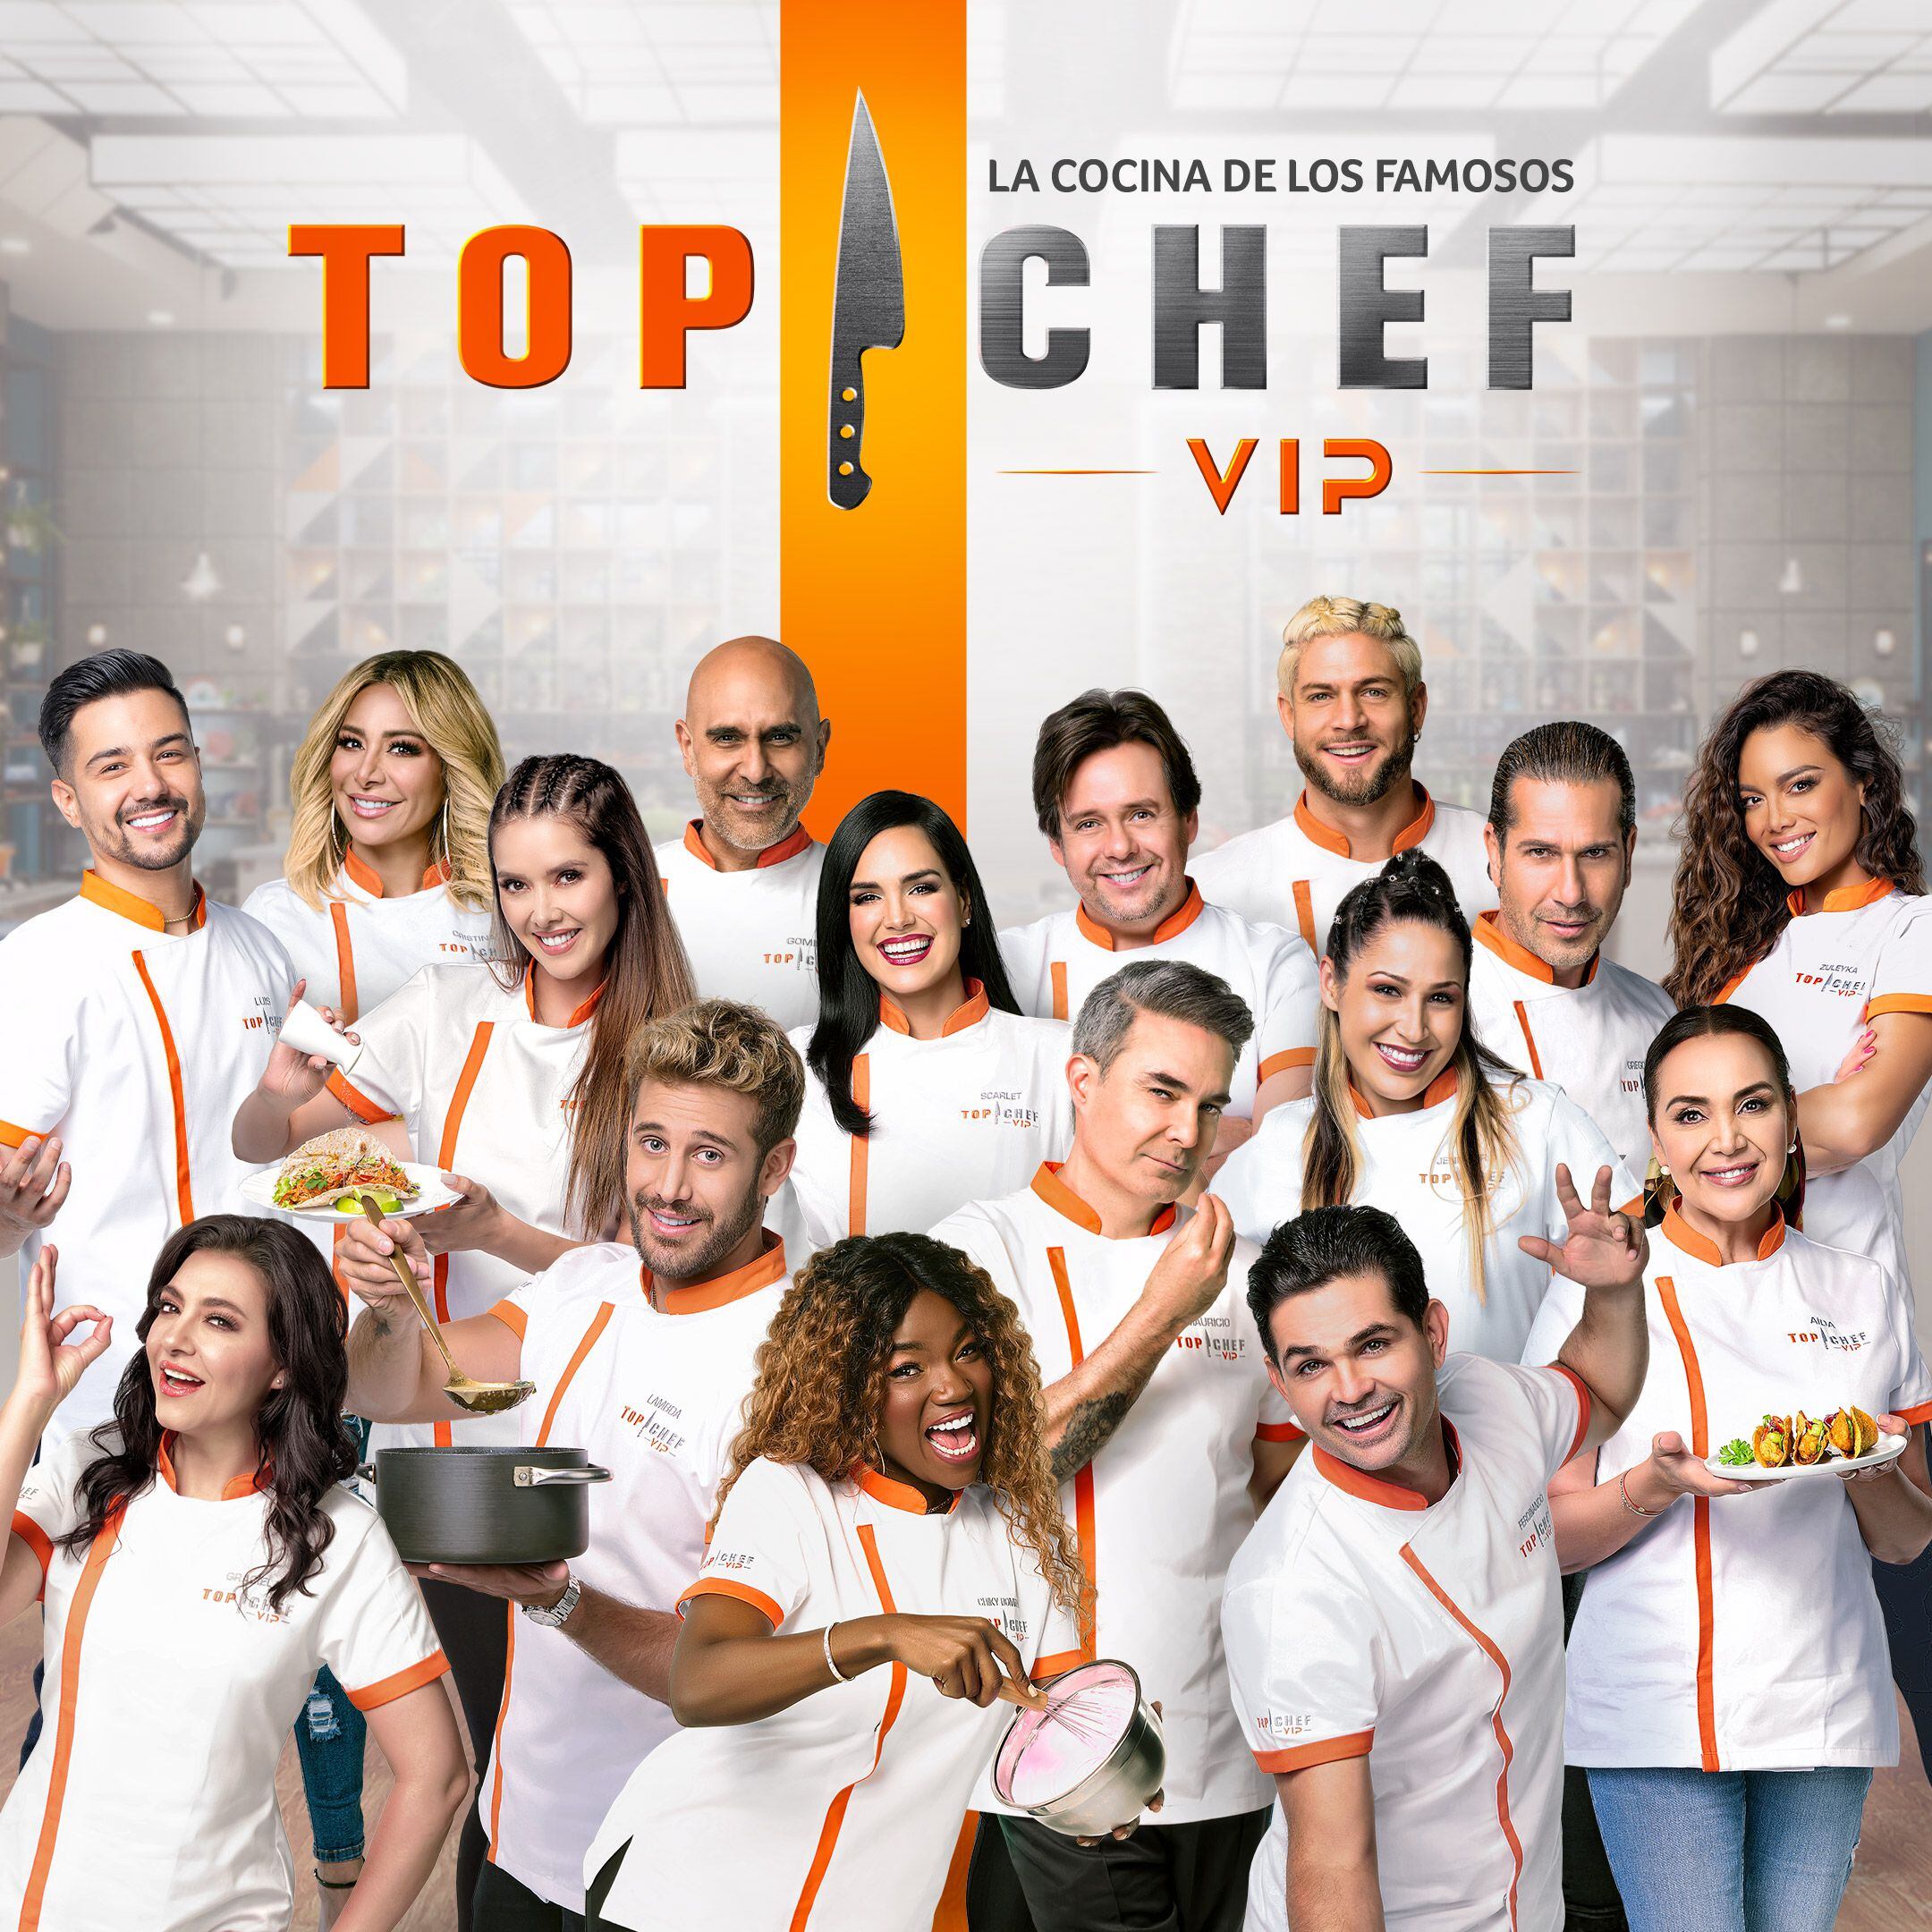 'Top chef Vip' es una competencia culinaria, donde solo los mejores llegarán hasta la gran final. 